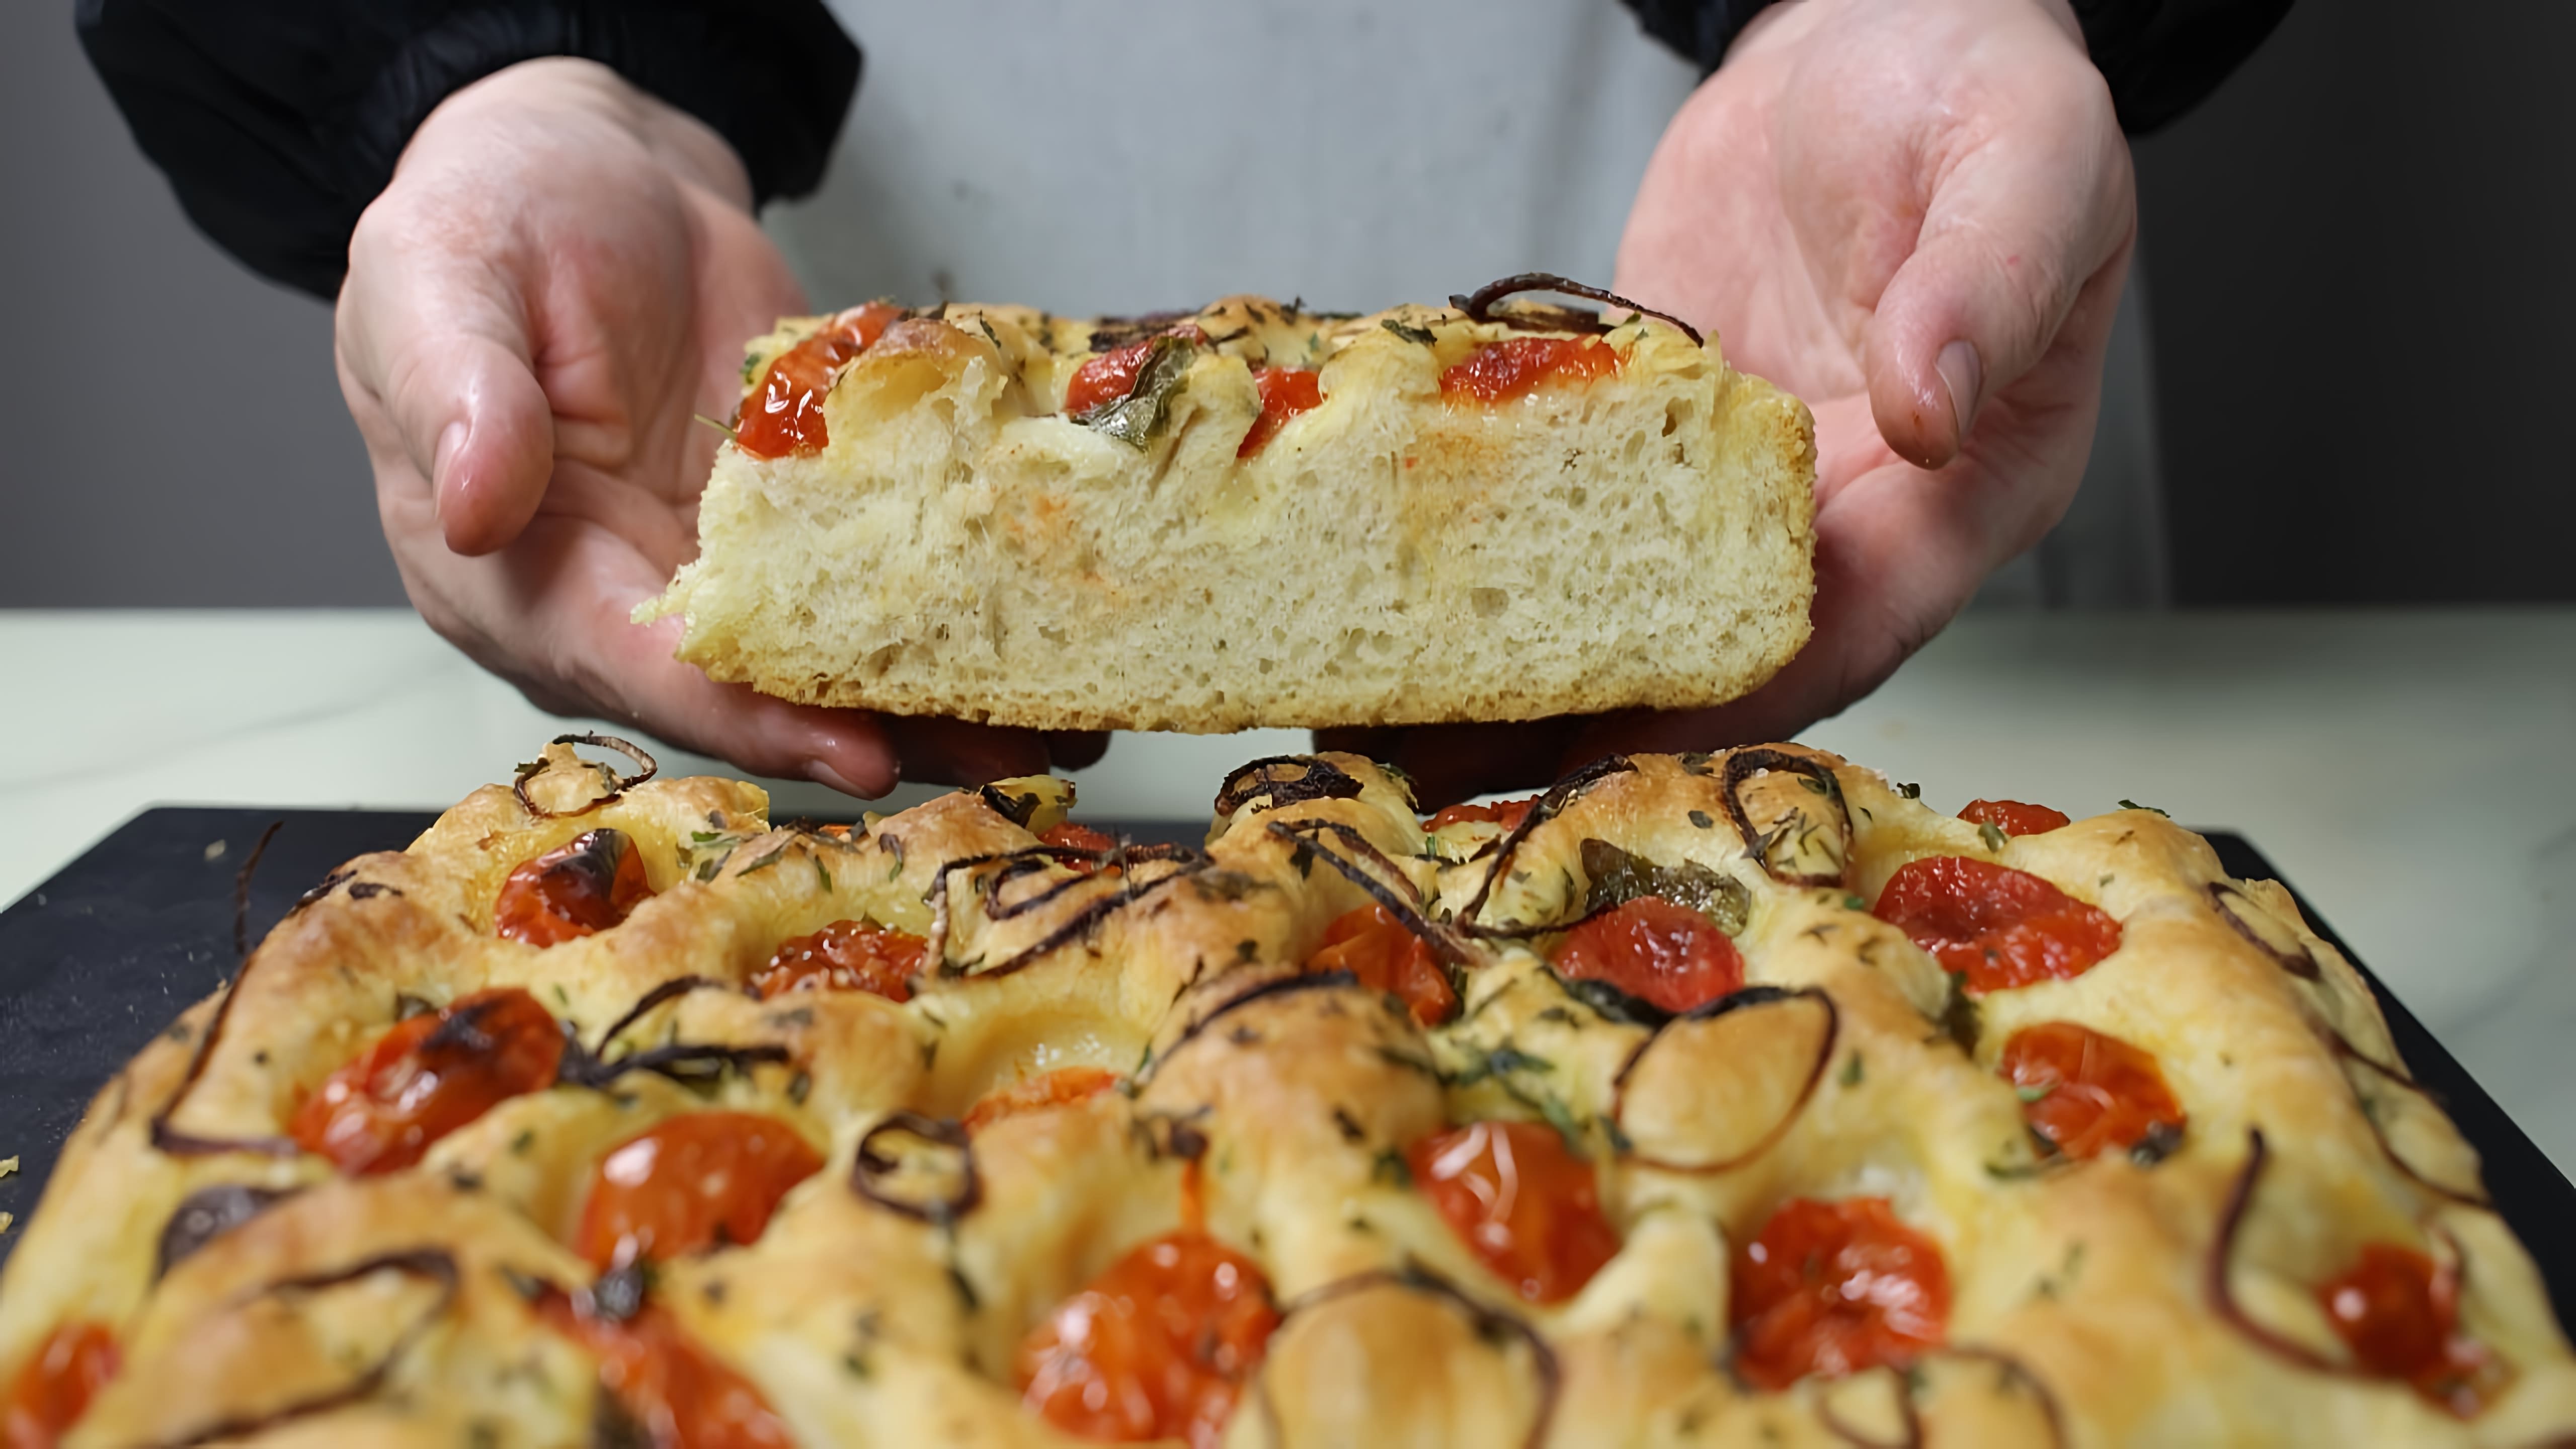 В этом видео демонстрируется процесс приготовления итальянского хлеба фокачча